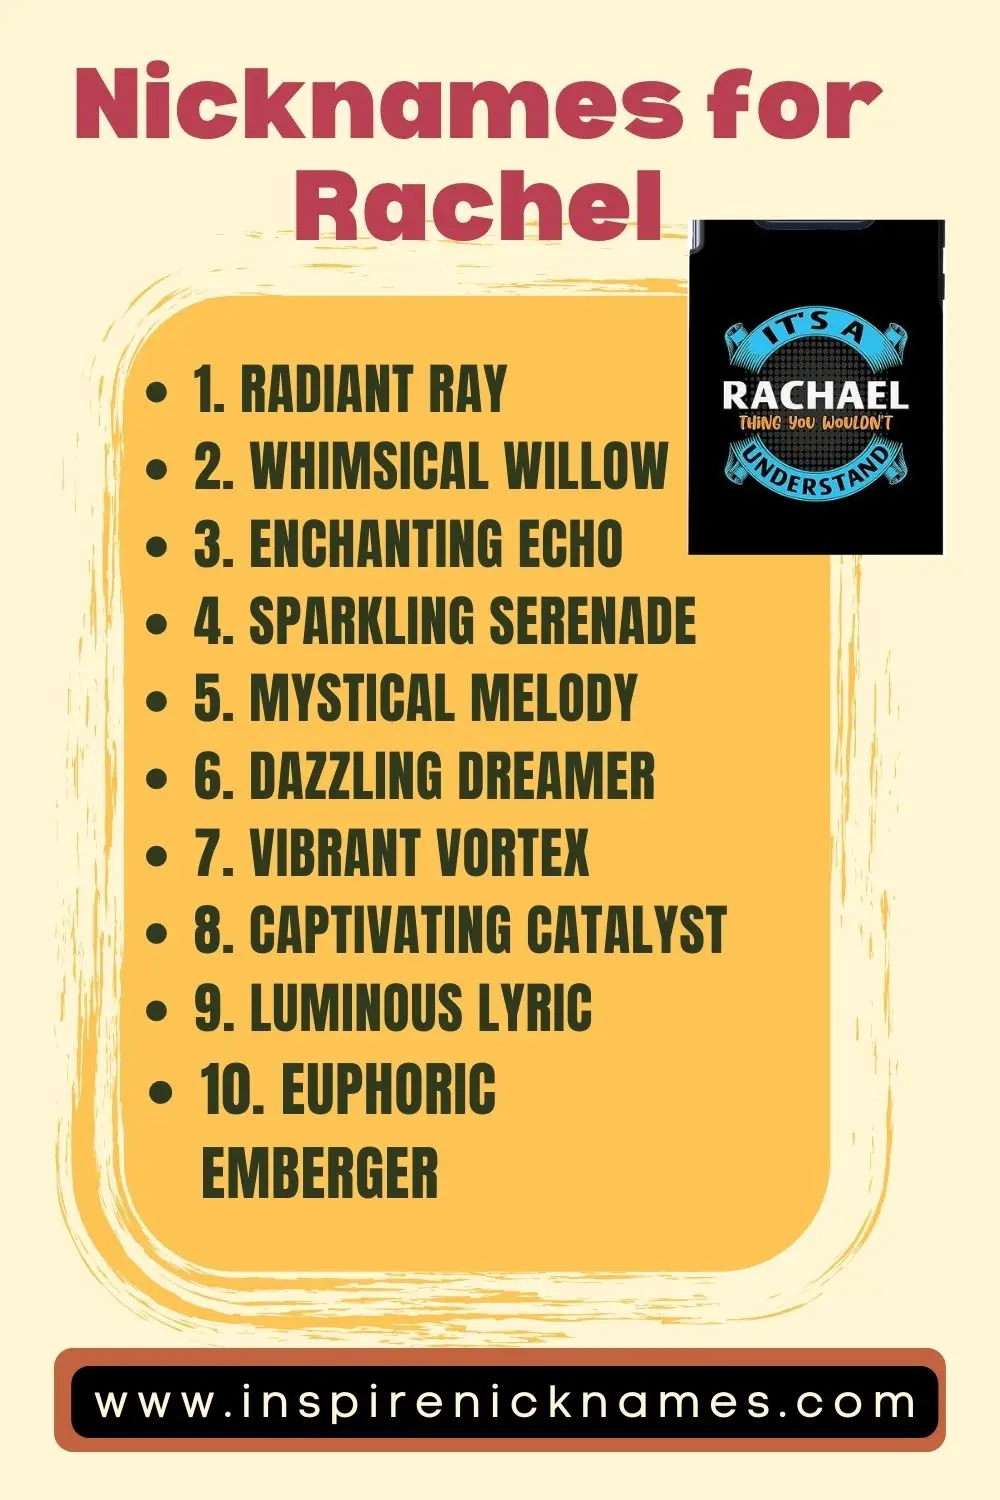 nicknames for Rachel list ideas